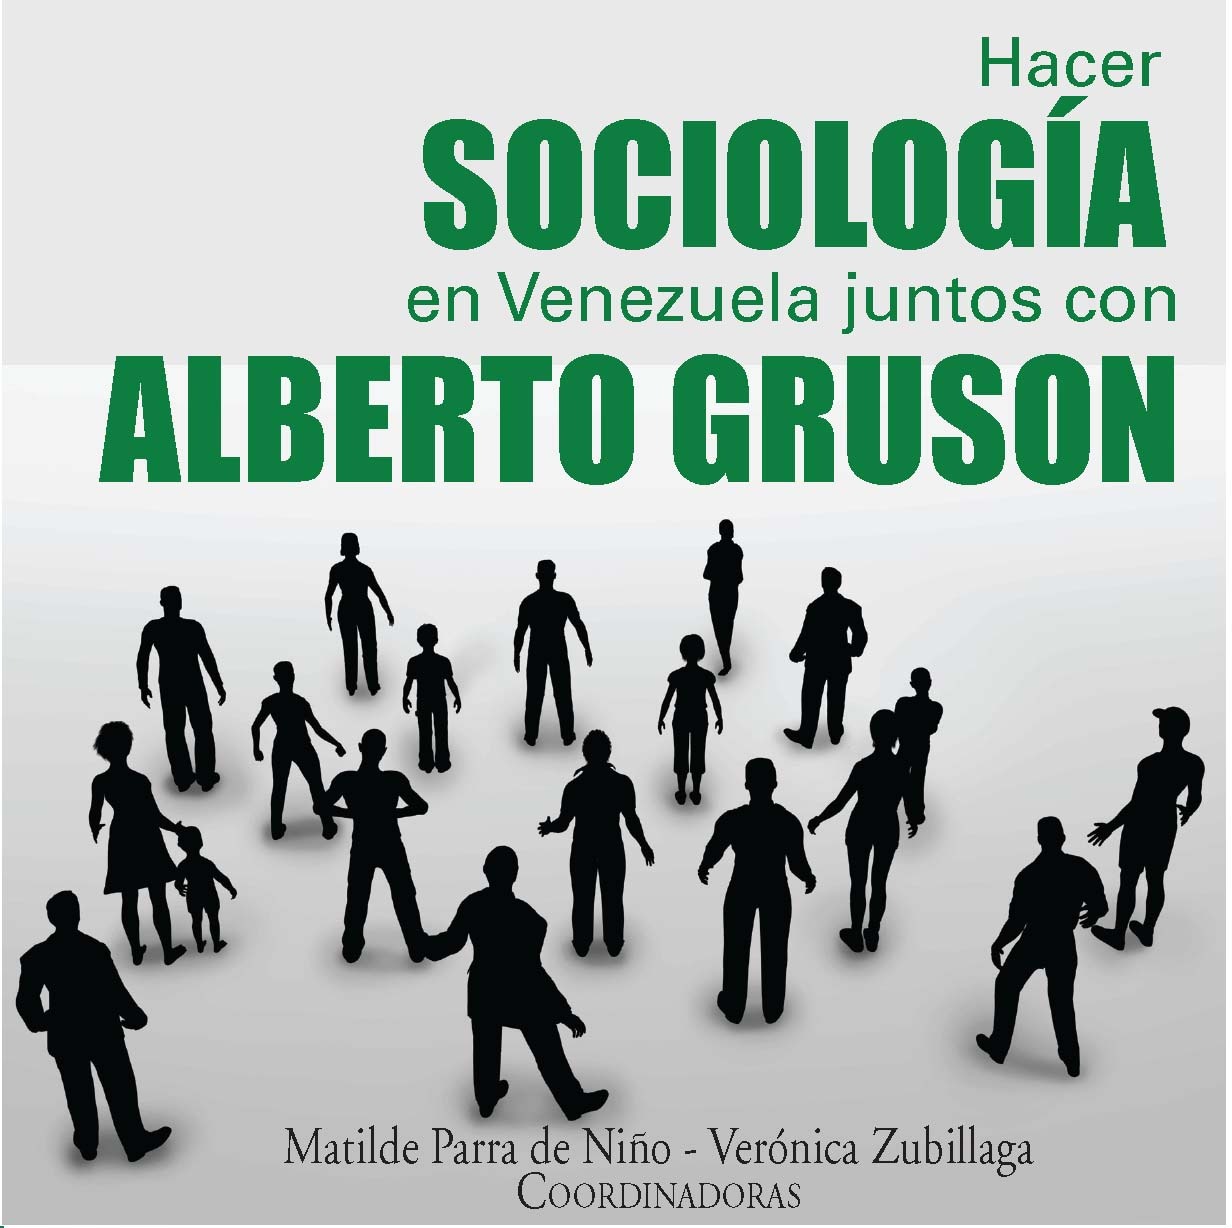 HACER SOCIOLOGÍA EN VENEZUELA JUNTOS CON ALBERTO GRUSON